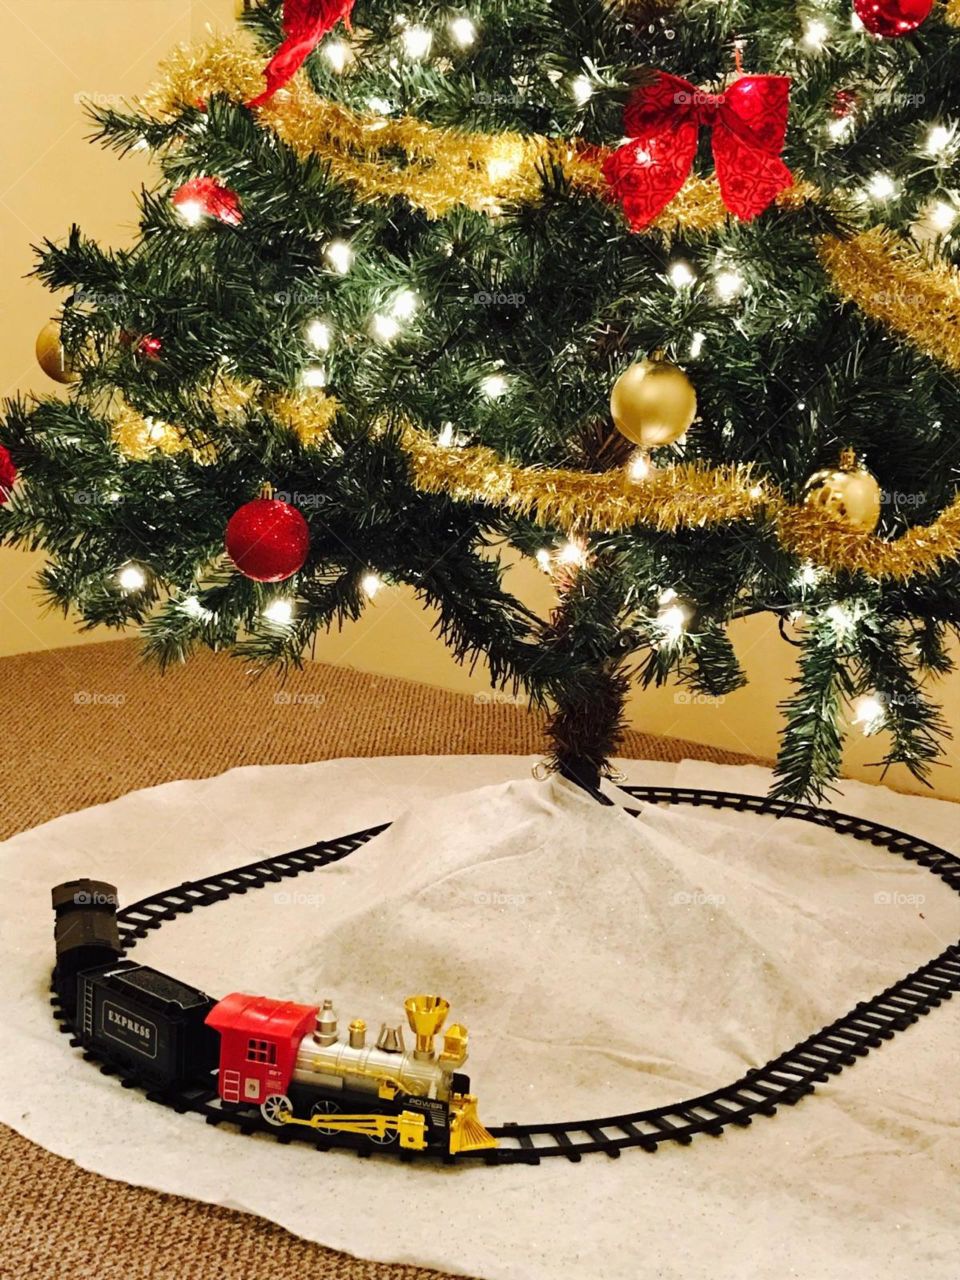 Christmas tree and train set